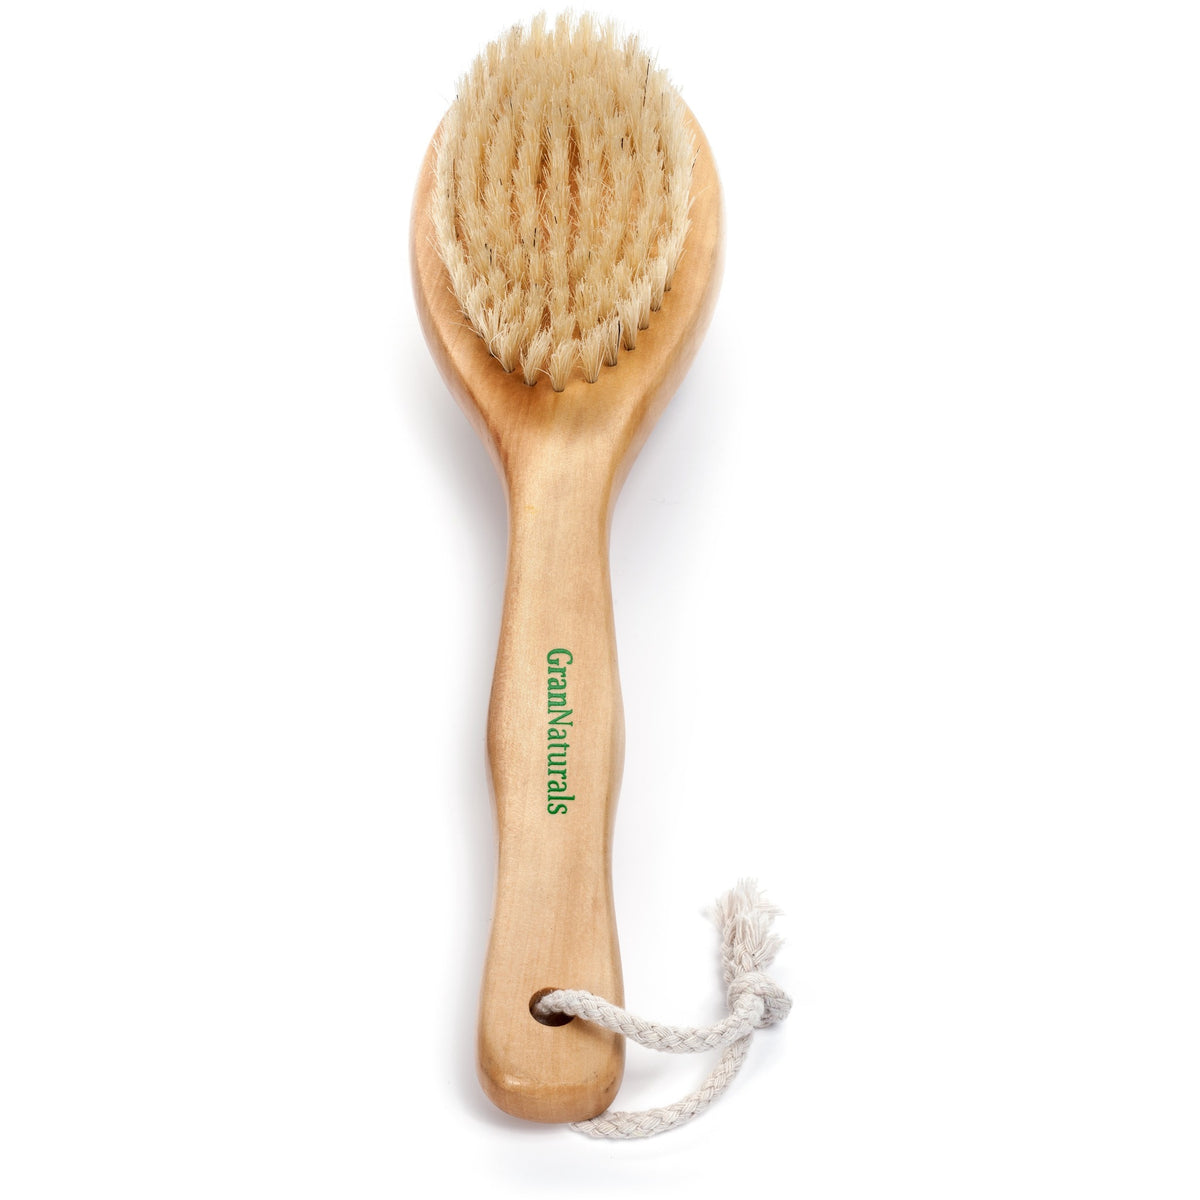 Dry Brushing Body Exfoliating Brush Natural Bristle Anti Cellulite M Grannaturals